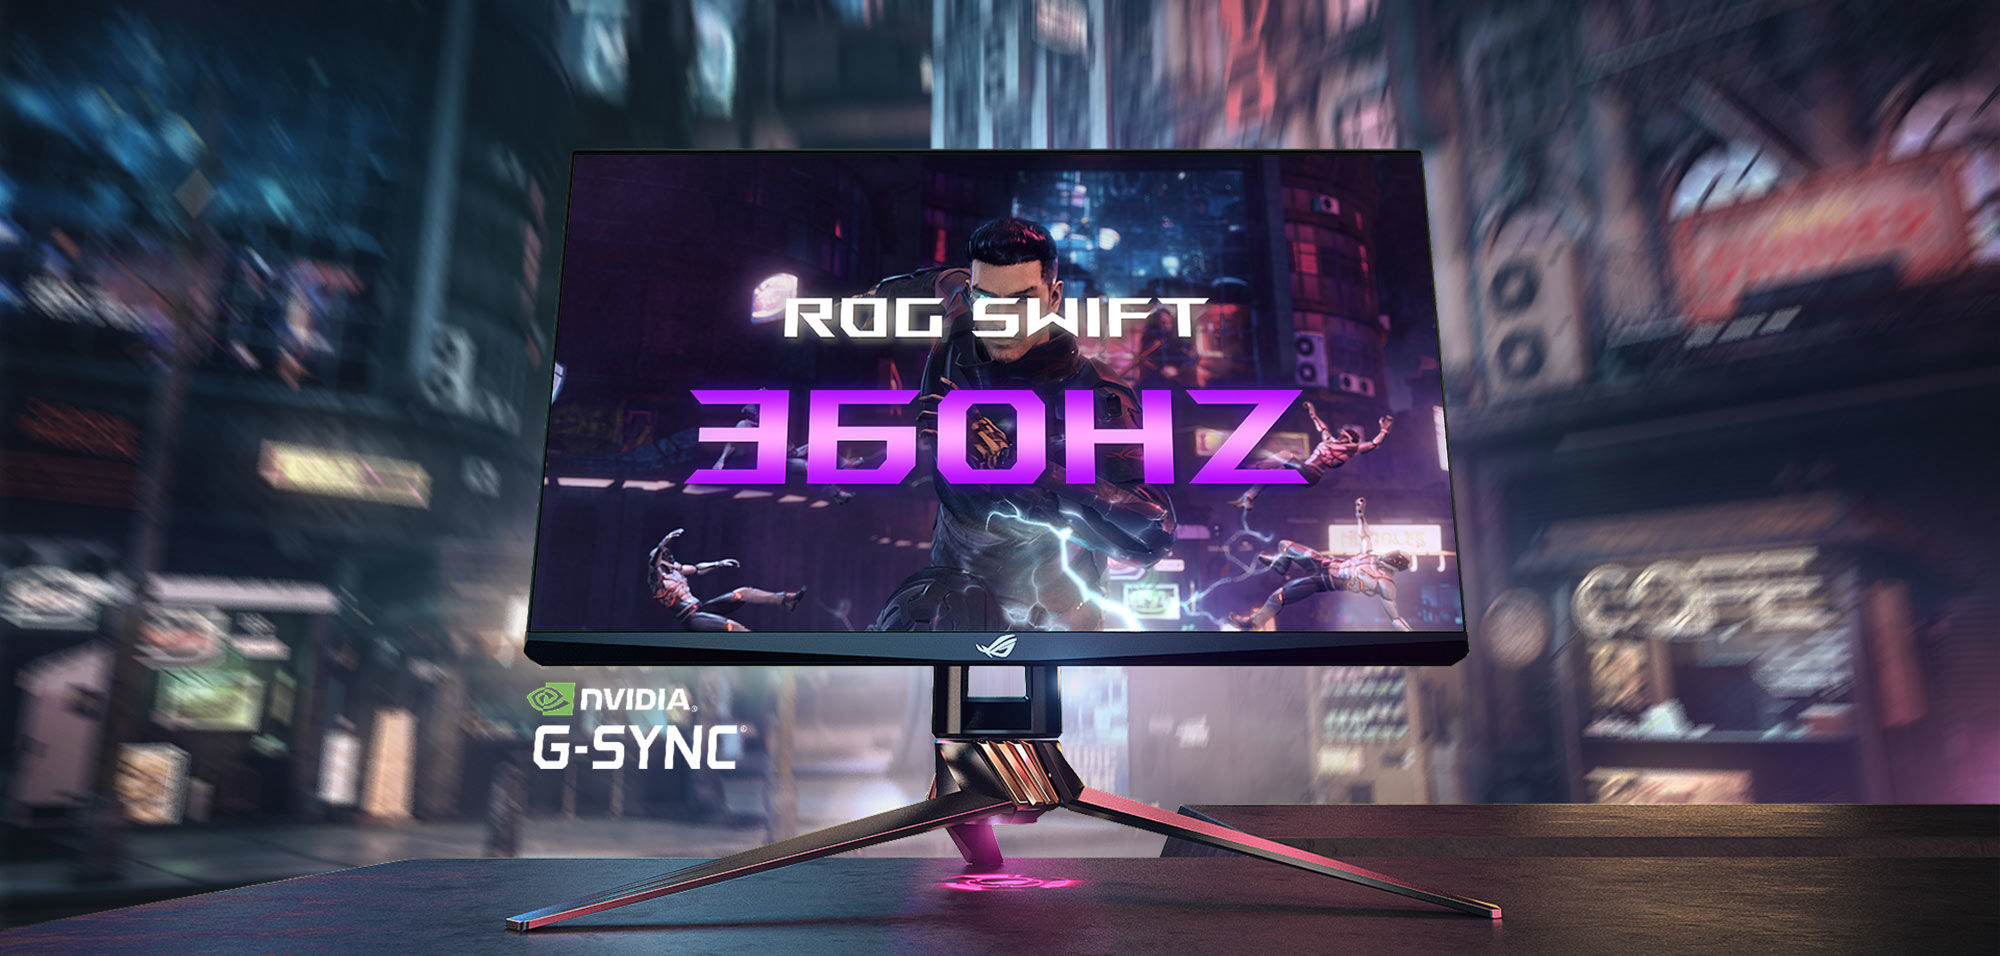 Immagine pubblicata in relazione al seguente contenuto: NVIDIA e ASUS annunciano il monitor ROG Swift 360Hz per gaming eSports | Nome immagine: news30323_NVIDIA-ROG-Swift-360Hz_1.jpg